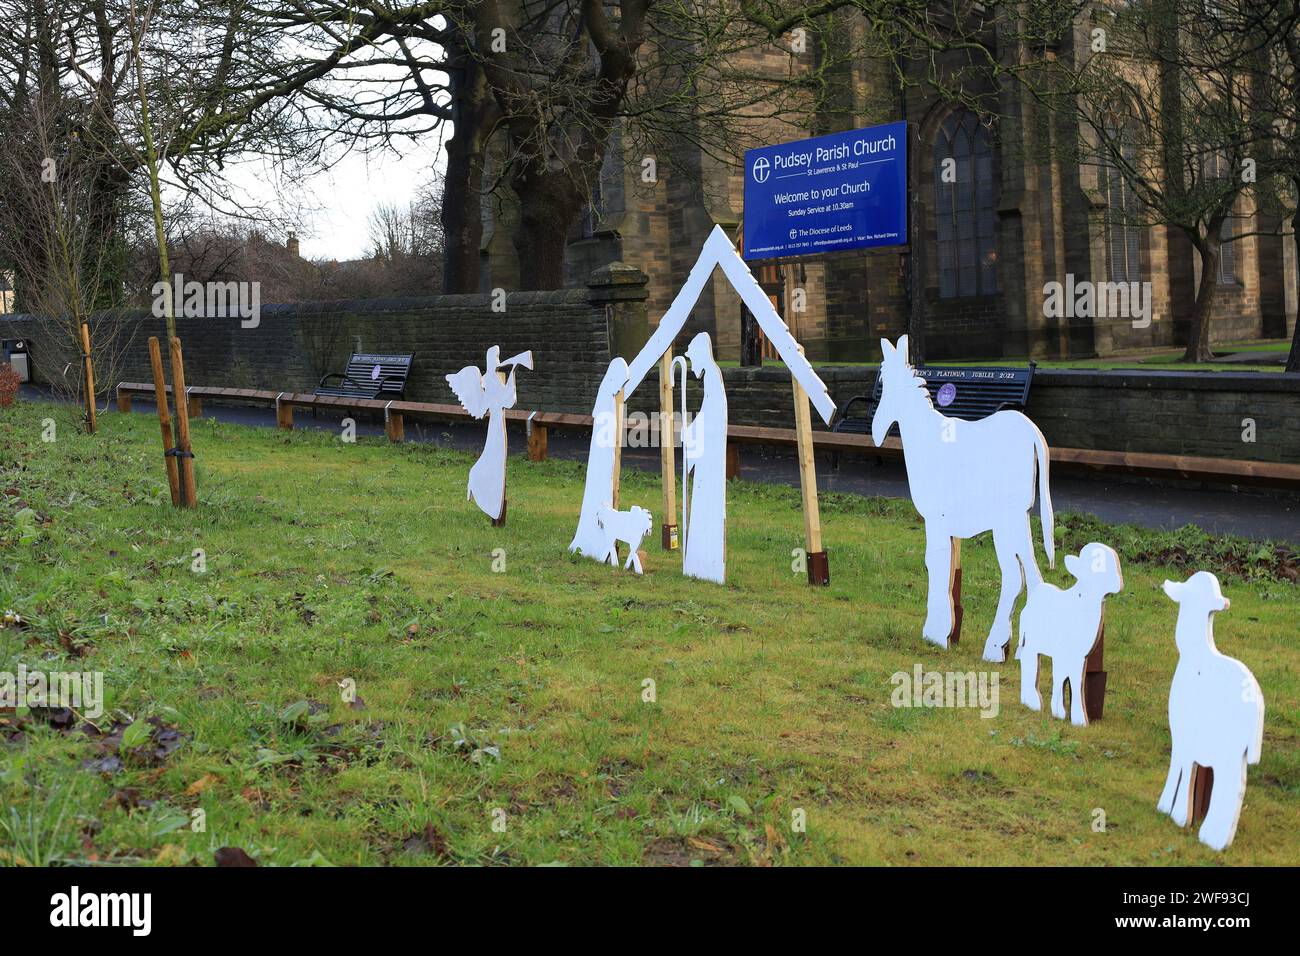 Découpes familiales en carton avec scène de nativité placée sur l'herbe Banque D'Images